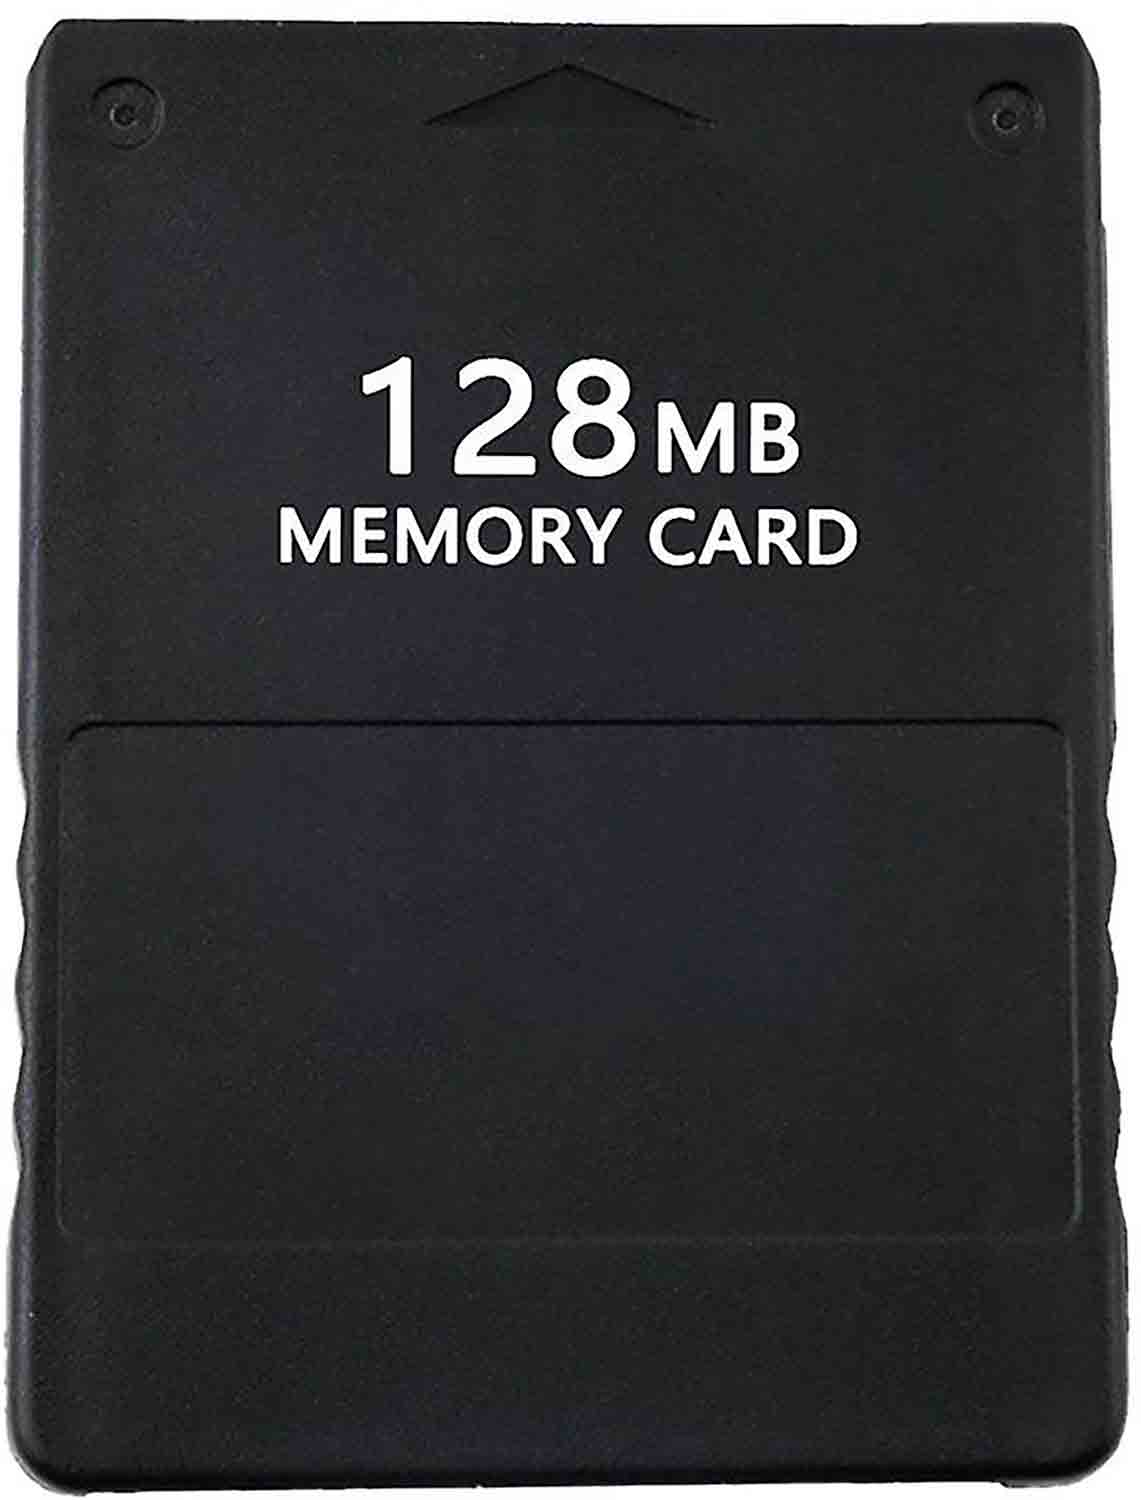 PS2 Paměťová karta 128 MB memory card příslušenství